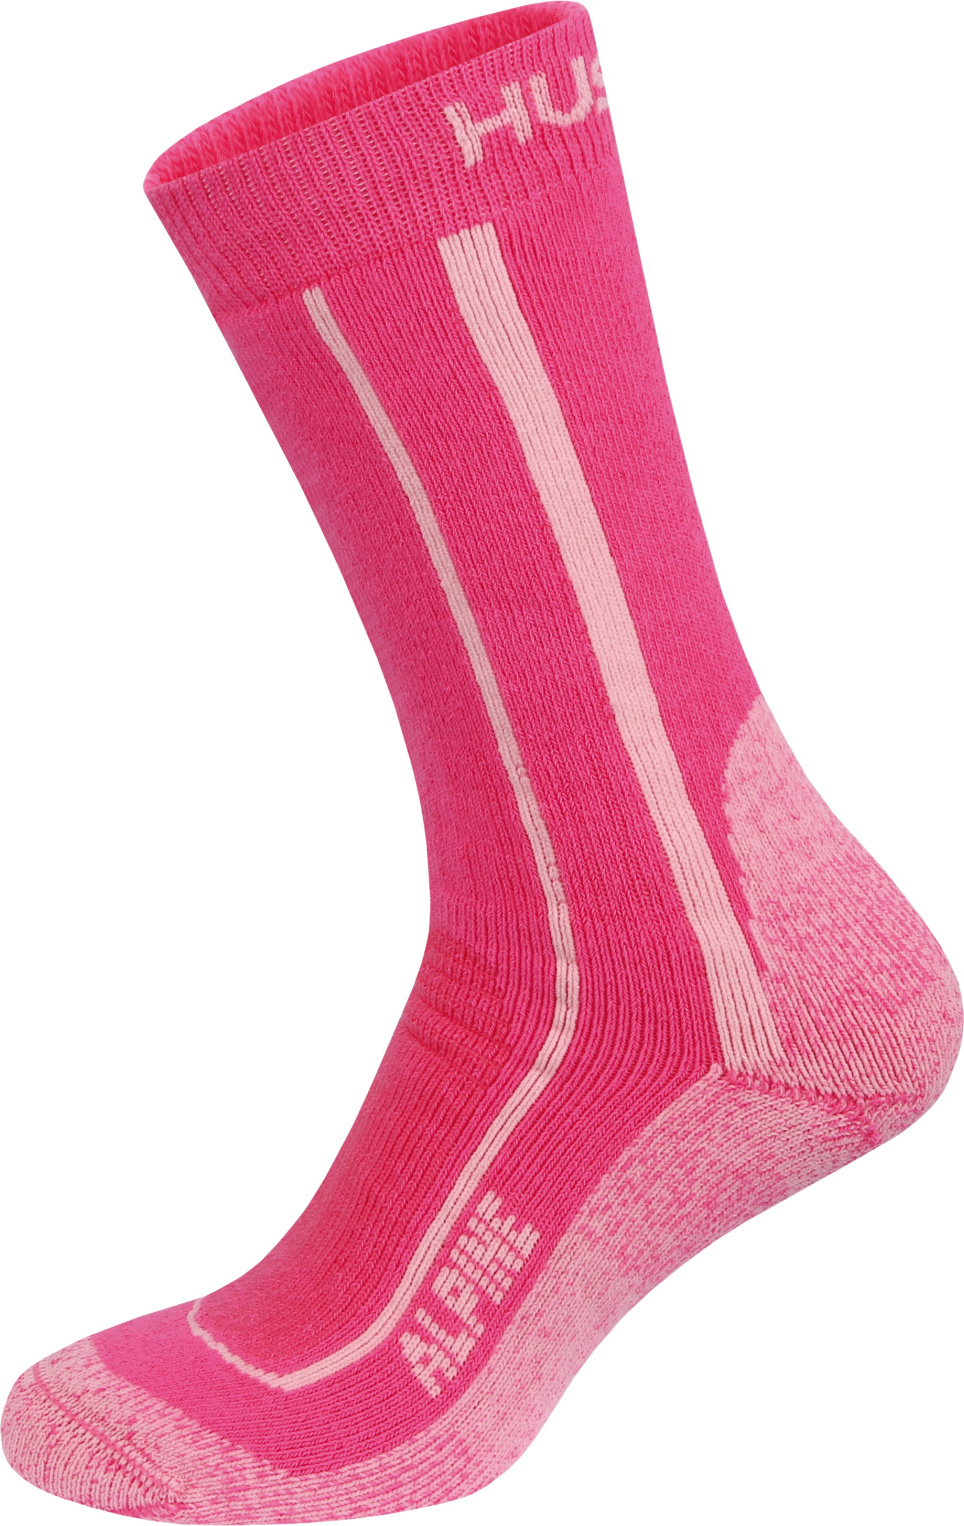 Unisex hřejivé ponožky HUSKY Alpine růžové Velikost: M (36-40)